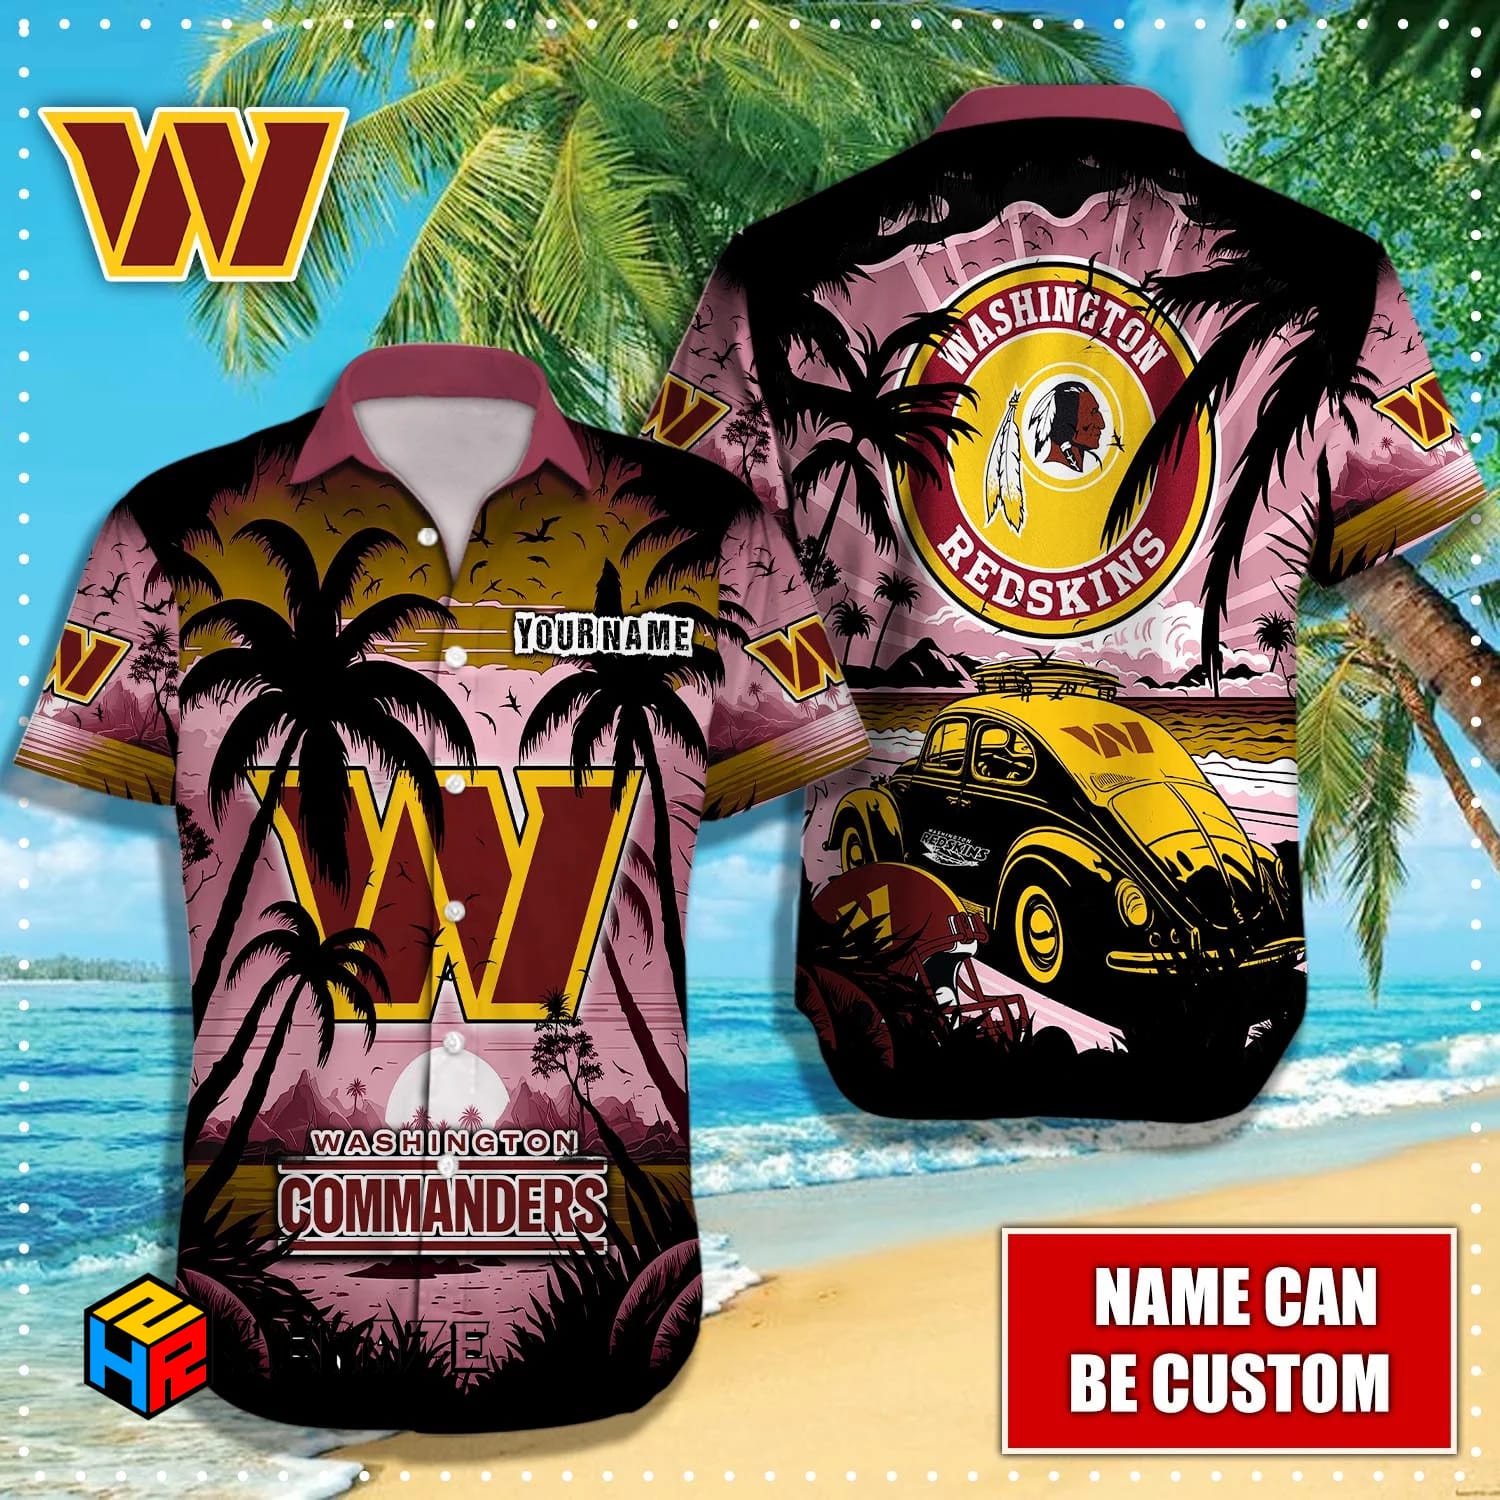 washington redskins hawaiian shirt